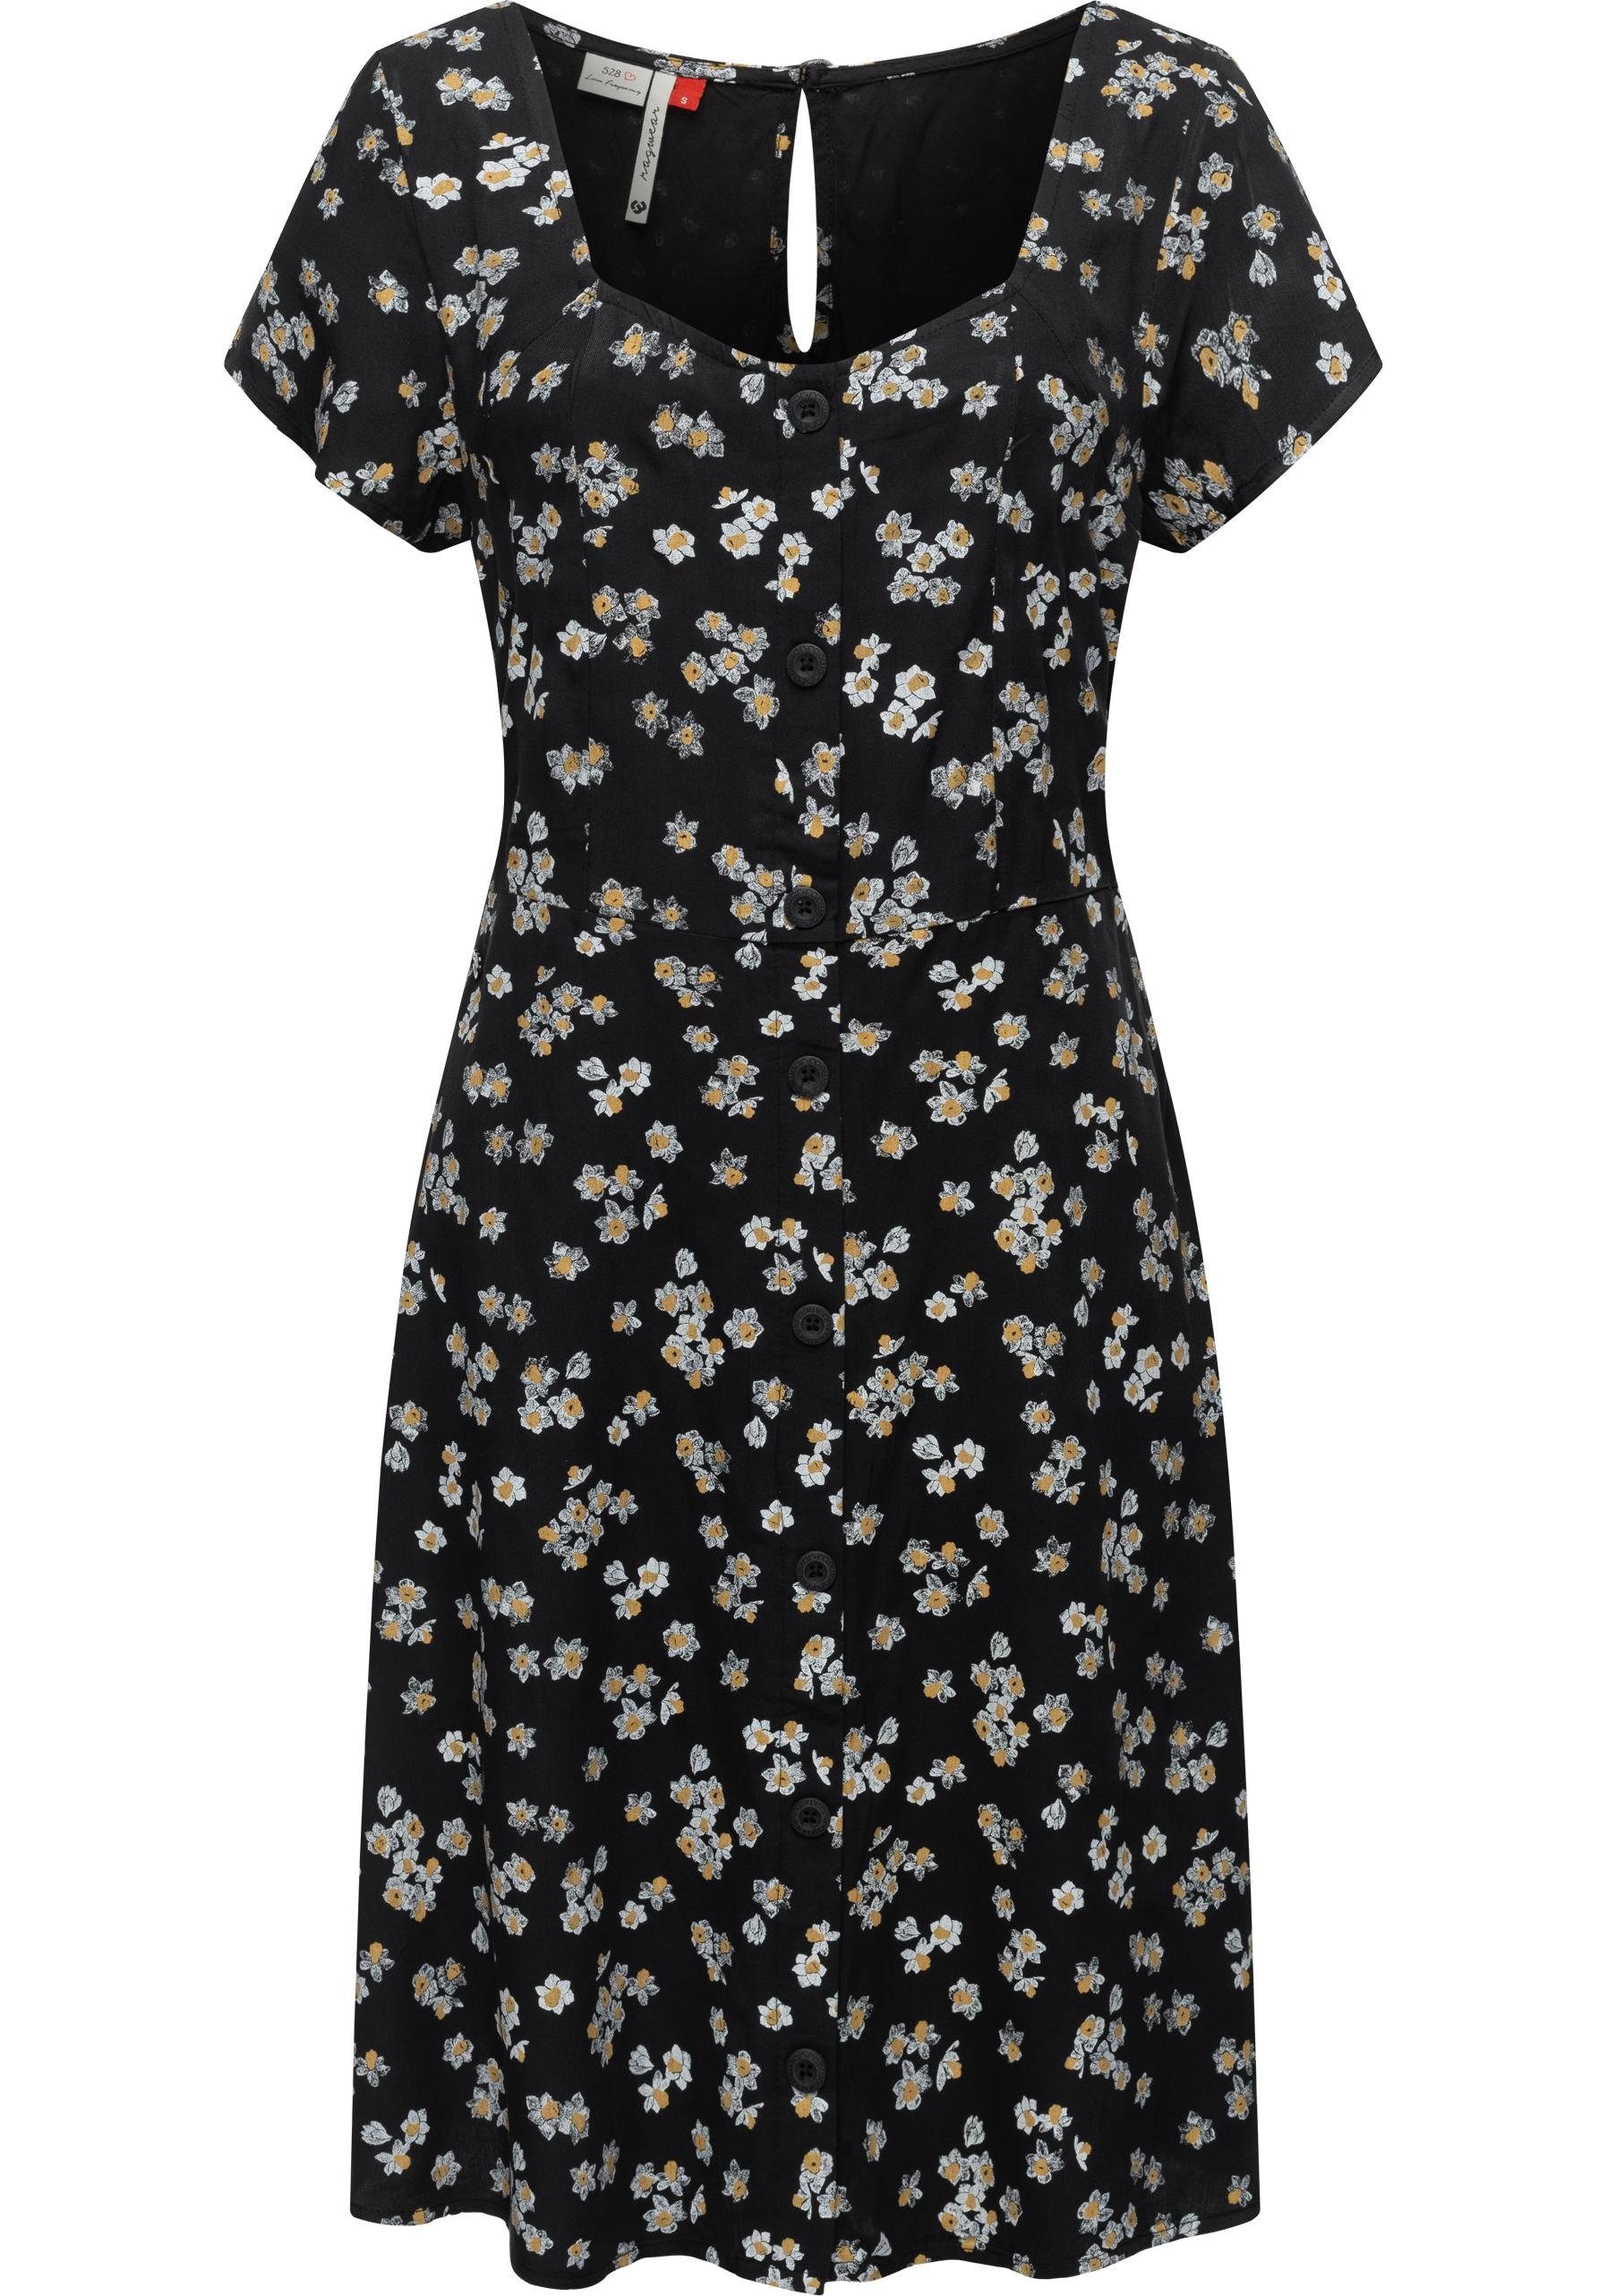 [Sehr willkommen] Ragwear Blusenkleid Anerley mit Sommerkleid Allover stylisches Print schwarz